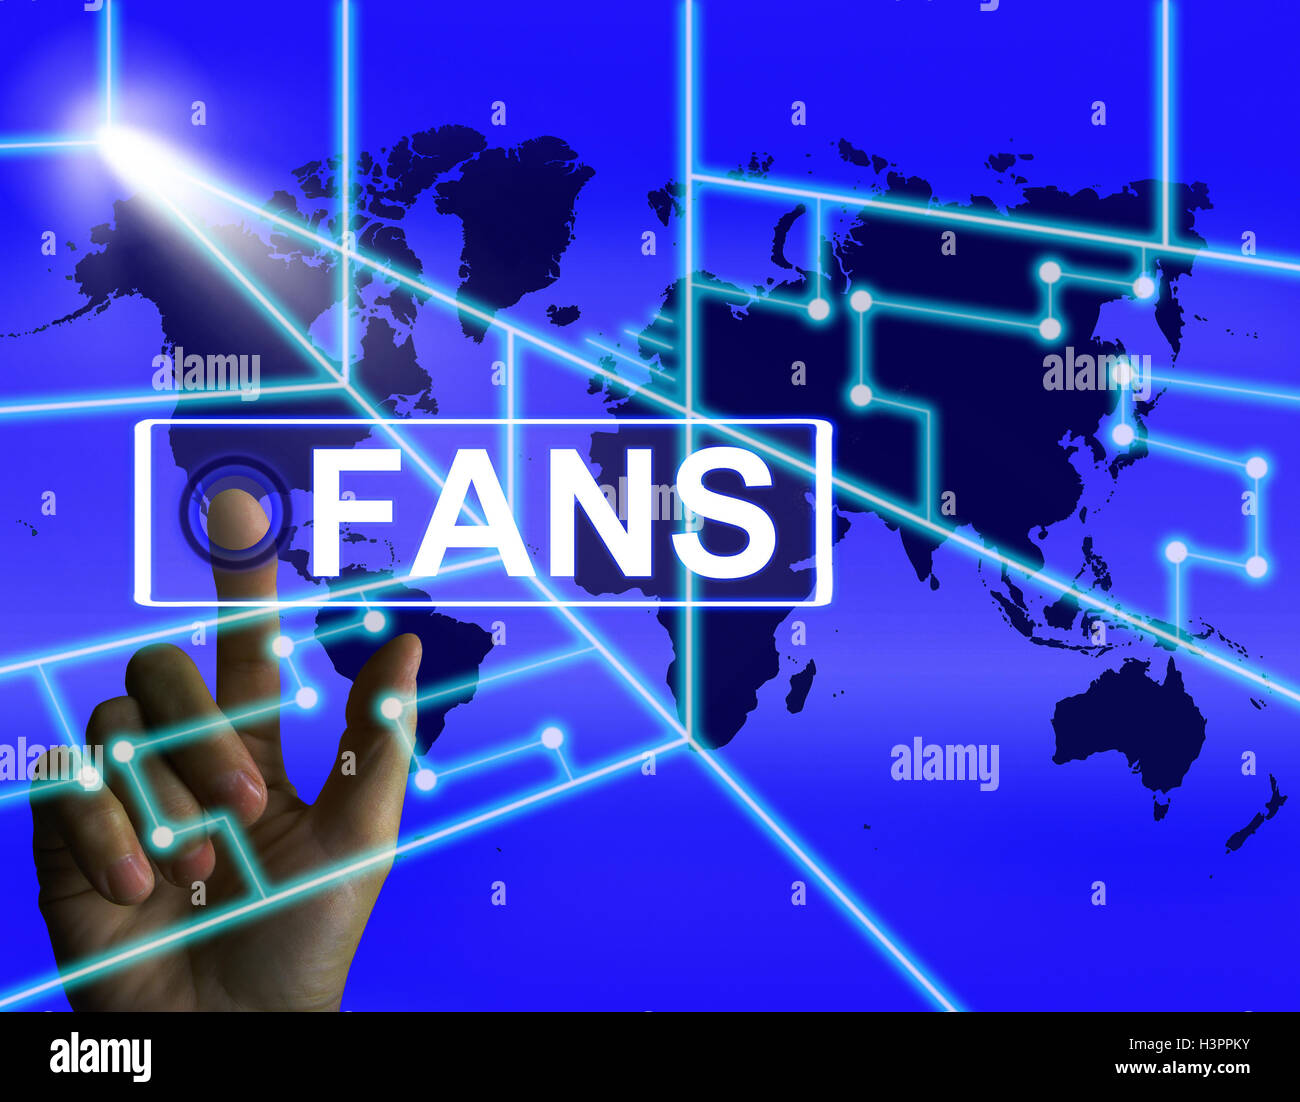 Bildschirm zeigt weltweit oder Internet-Anhänger oder Bewunderer-Fans Stockfoto